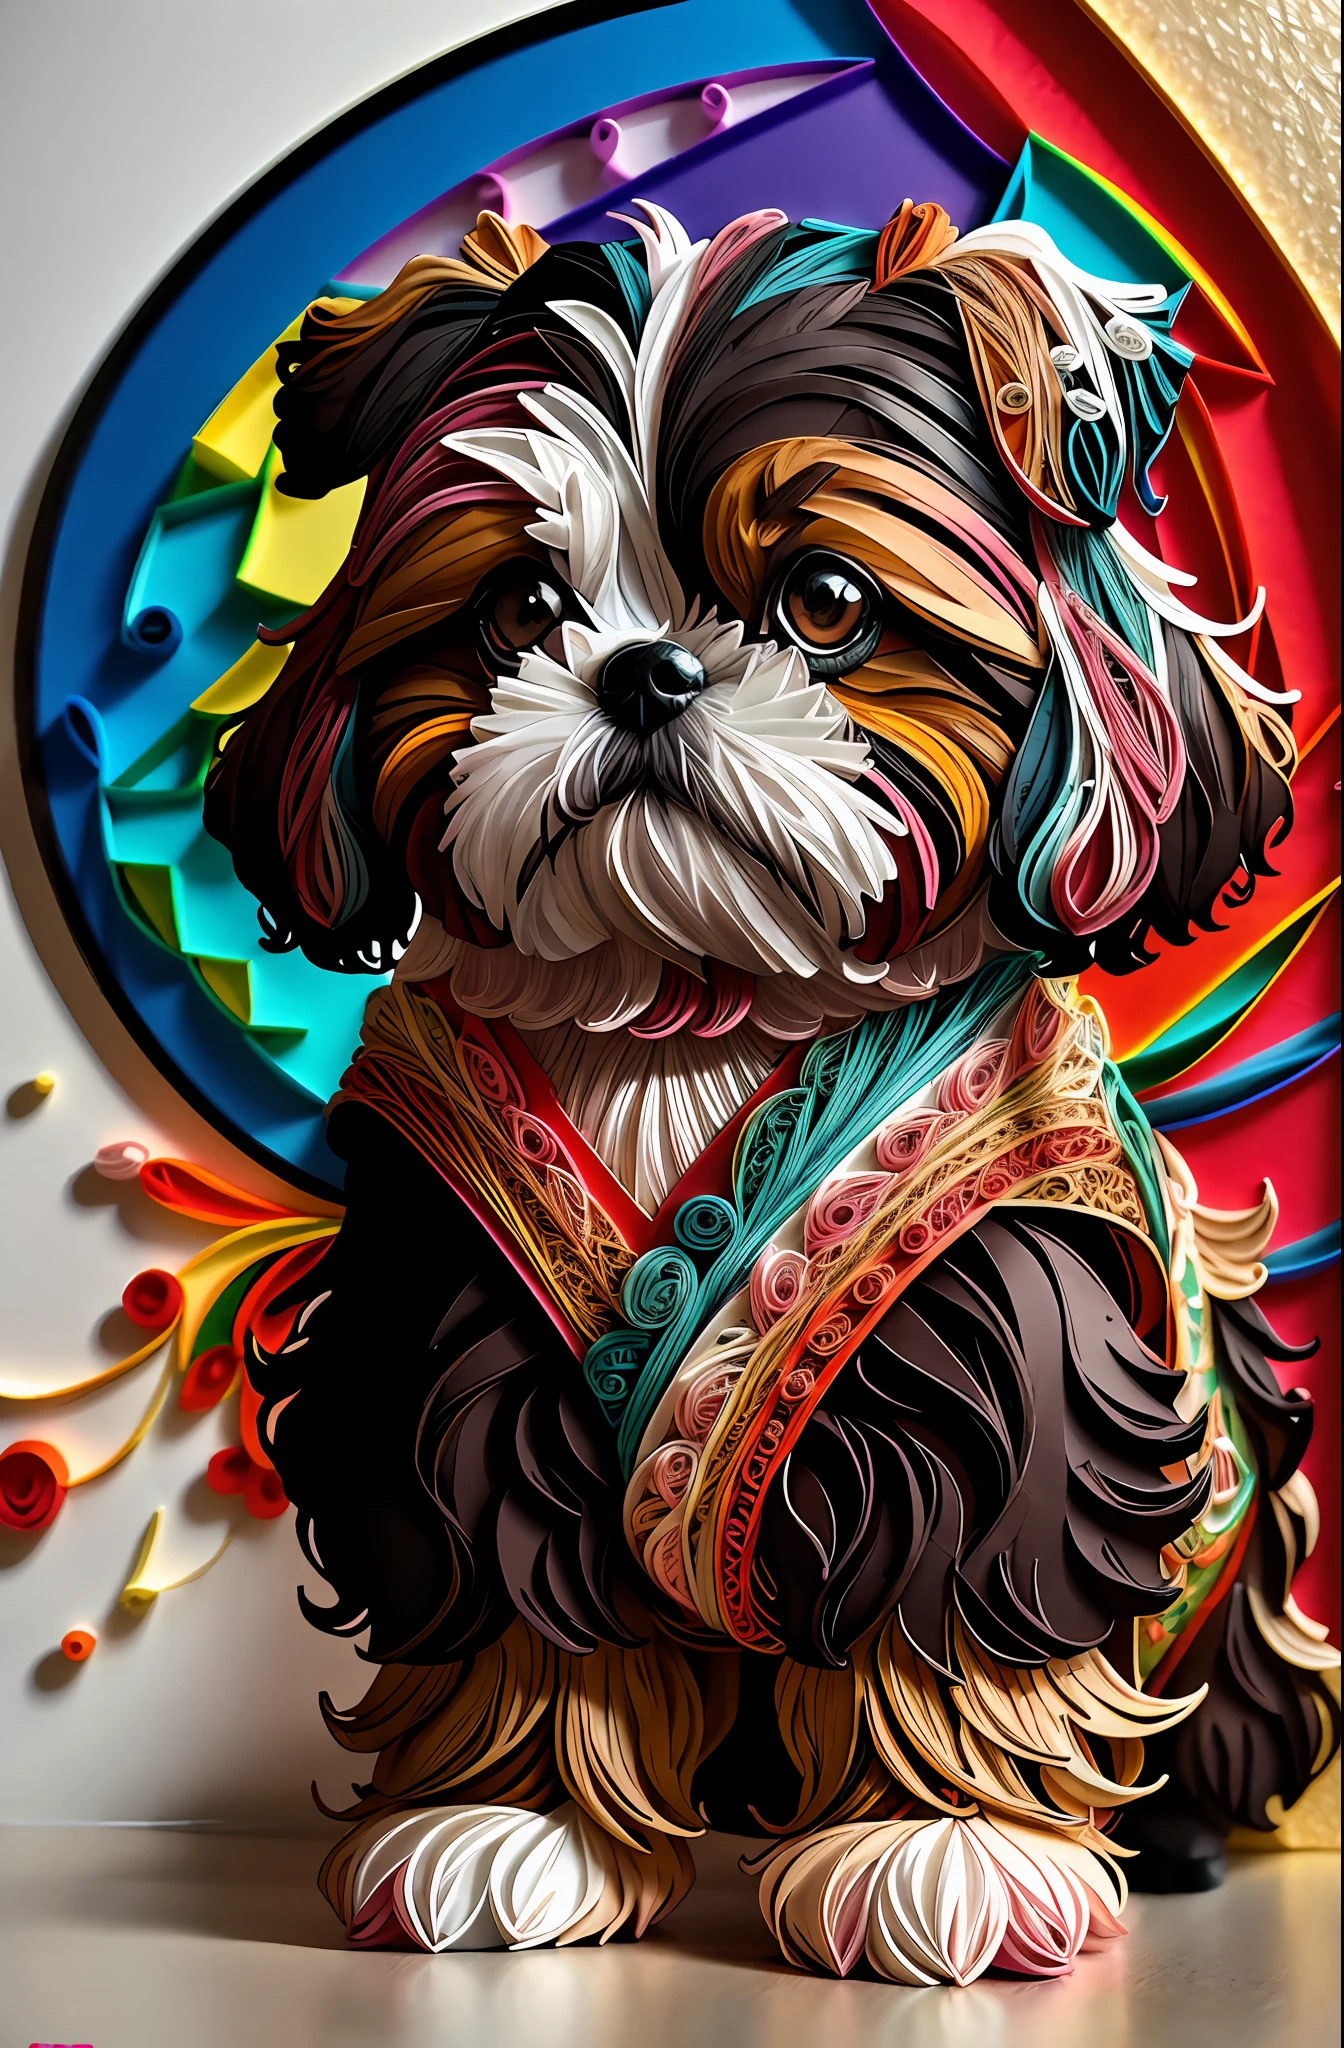 Meisterwerke, Top Qualität, beste Qualität), schöner Shih Tzu Hund, Kunst auf mehrdimensionalem Quilling-Papier, schöne und farbenfrohe Ästhetik, yang08k-Stil.